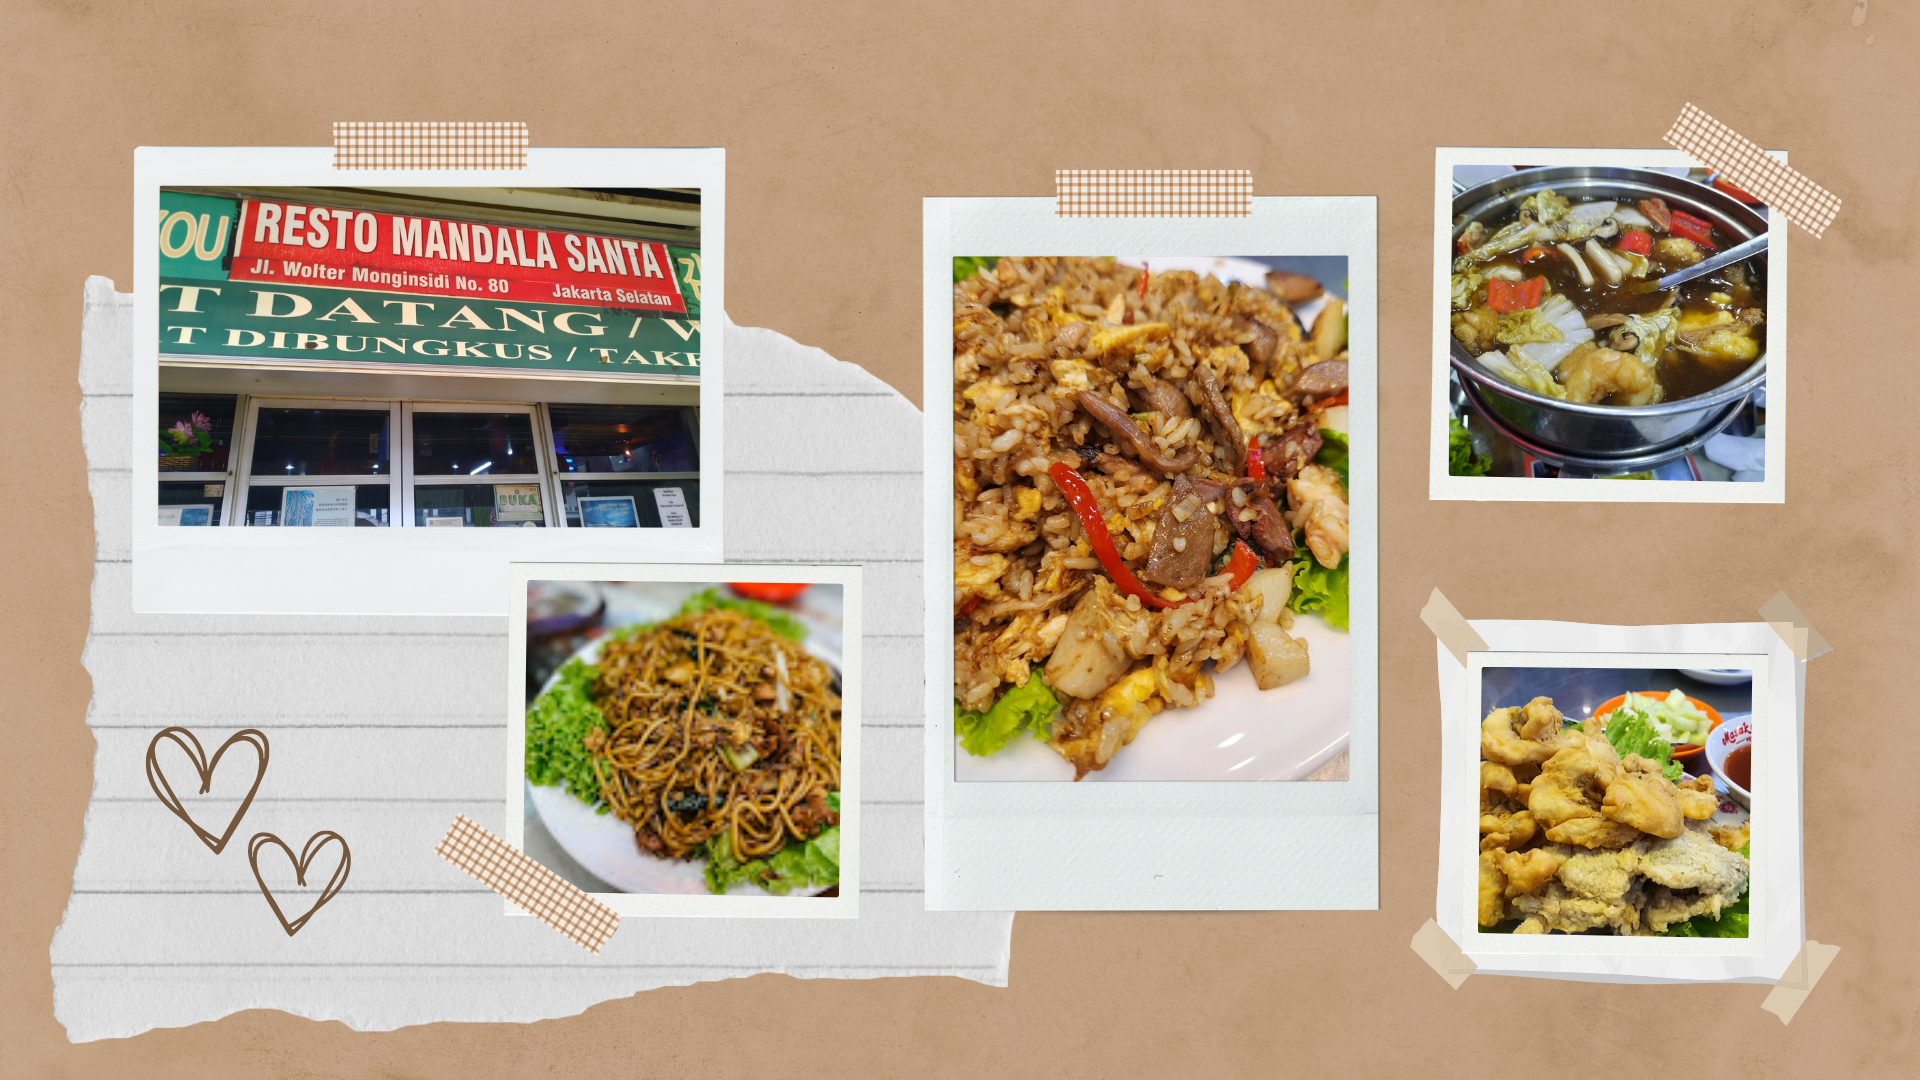 Restoran - Resto Mandala -17 Restoran untuk Makan Siang di Jakarta Selatan - YOEXPLORE